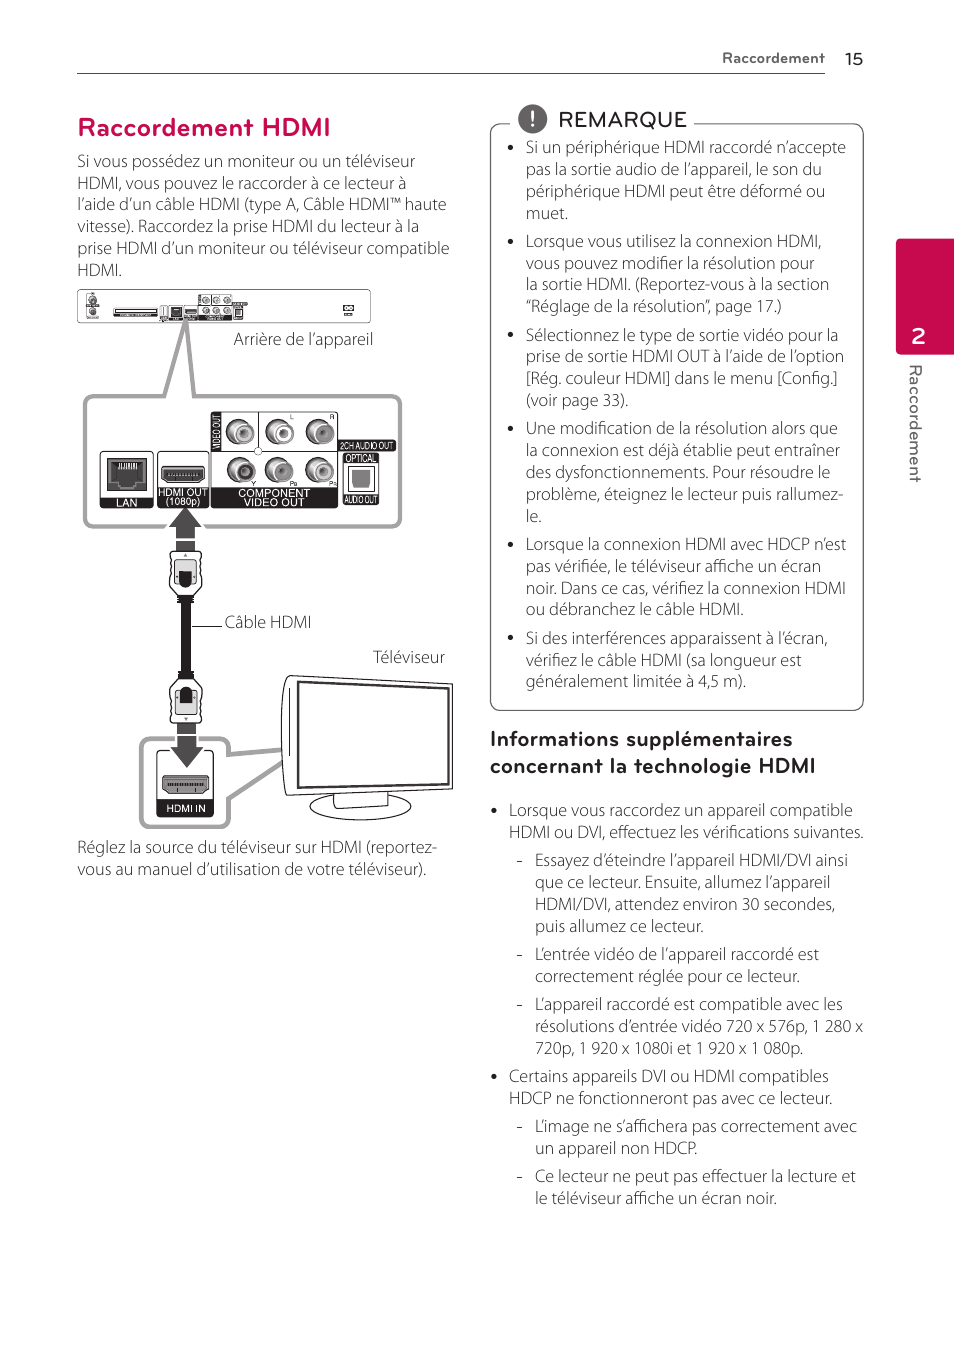 Raccordement hdmi | LG HR922D Manuel d'utilisation | Page 15 / 94